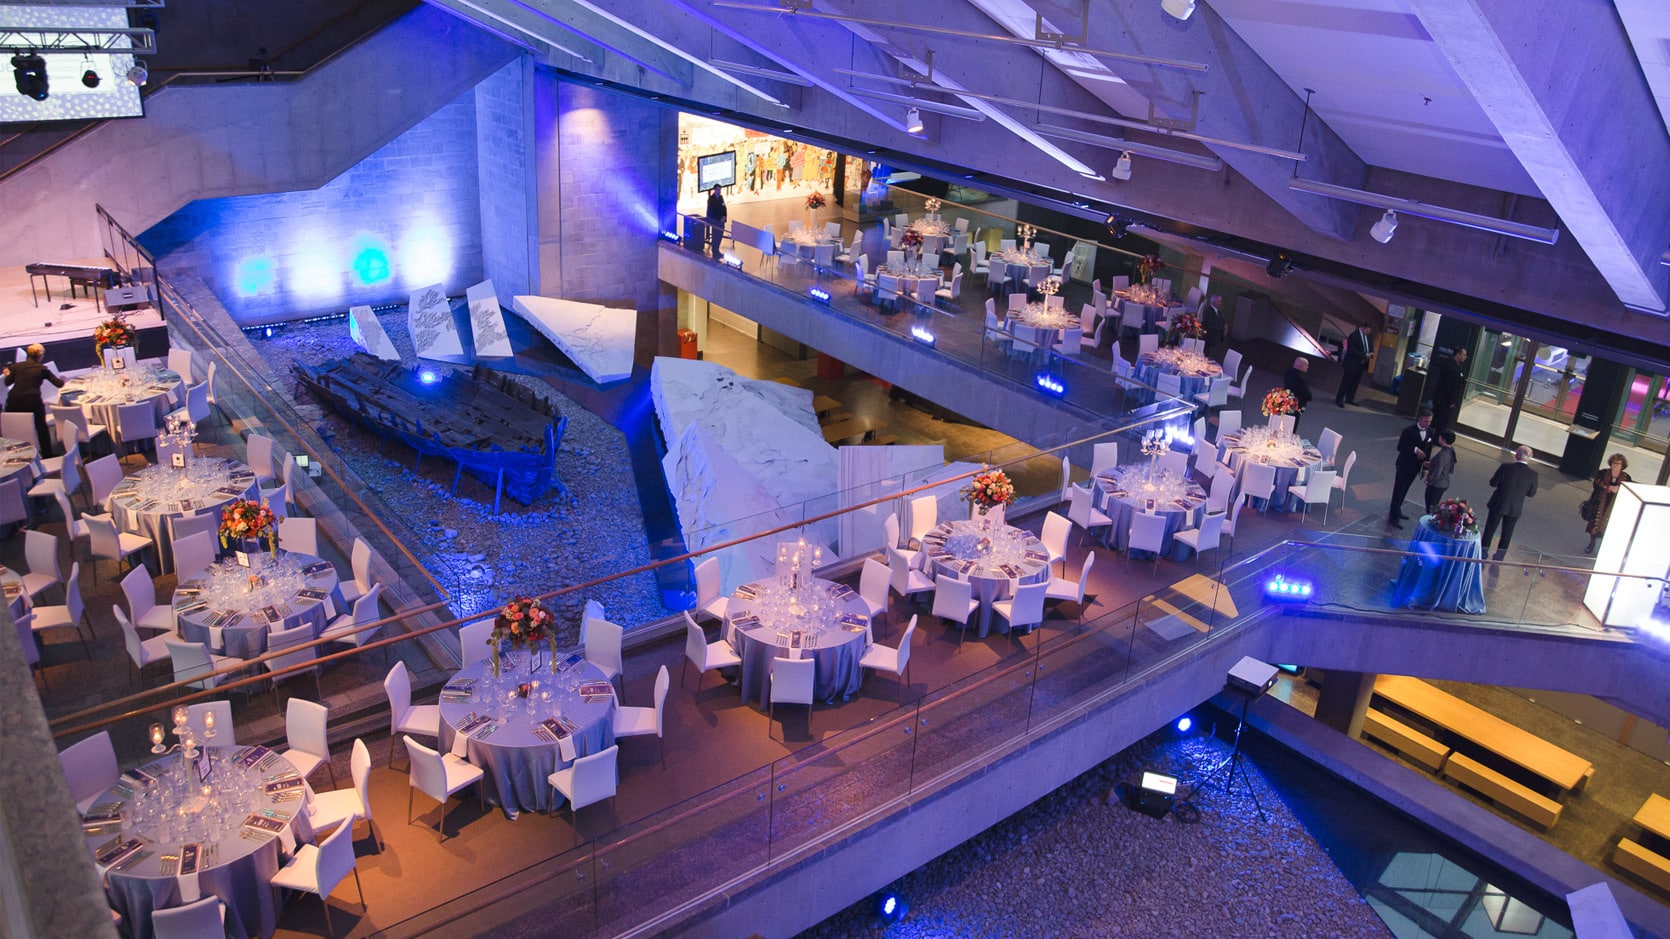 Vue en plongée du Hall du Musée en formule banquet, on y voit plusieurs tables rondes nappés en gris avec des chaises blanches et des arrangements floraux et des chandeliers.